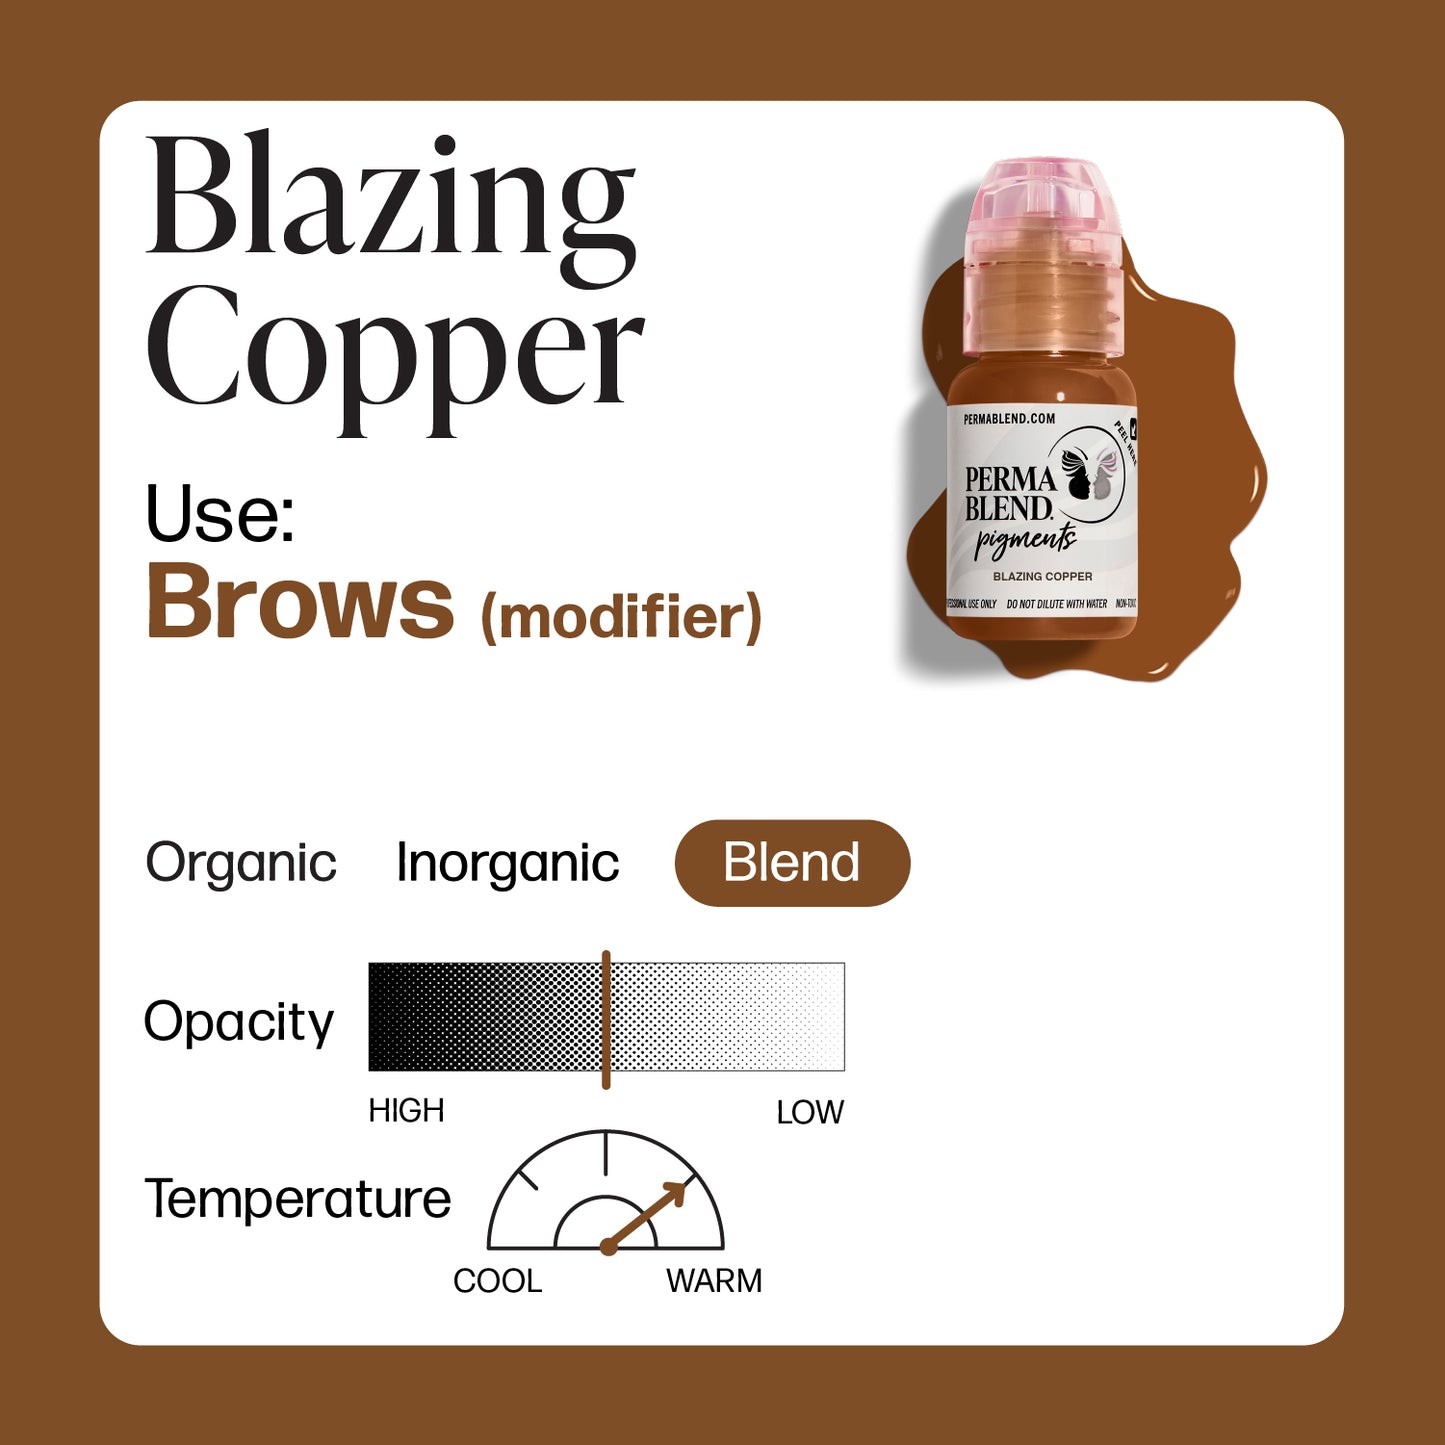 Perma Blend Blazing Copper